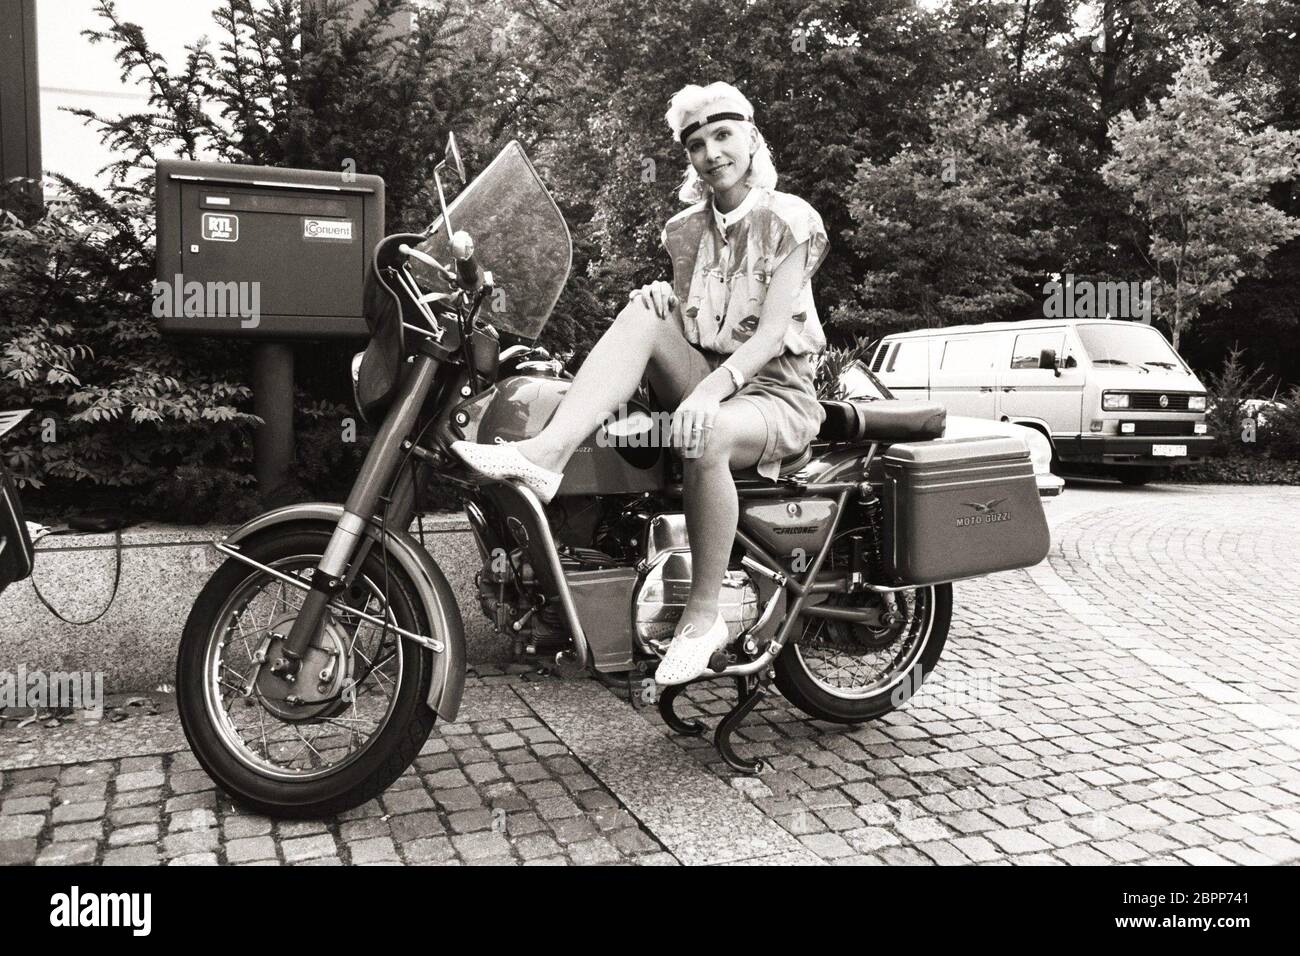 Isolde Tarrach // Foto-Shoot - Fernsehmodéraatorin Isolde Tarrach auf einem Motorrad in den 80er Jahren Banque D'Images